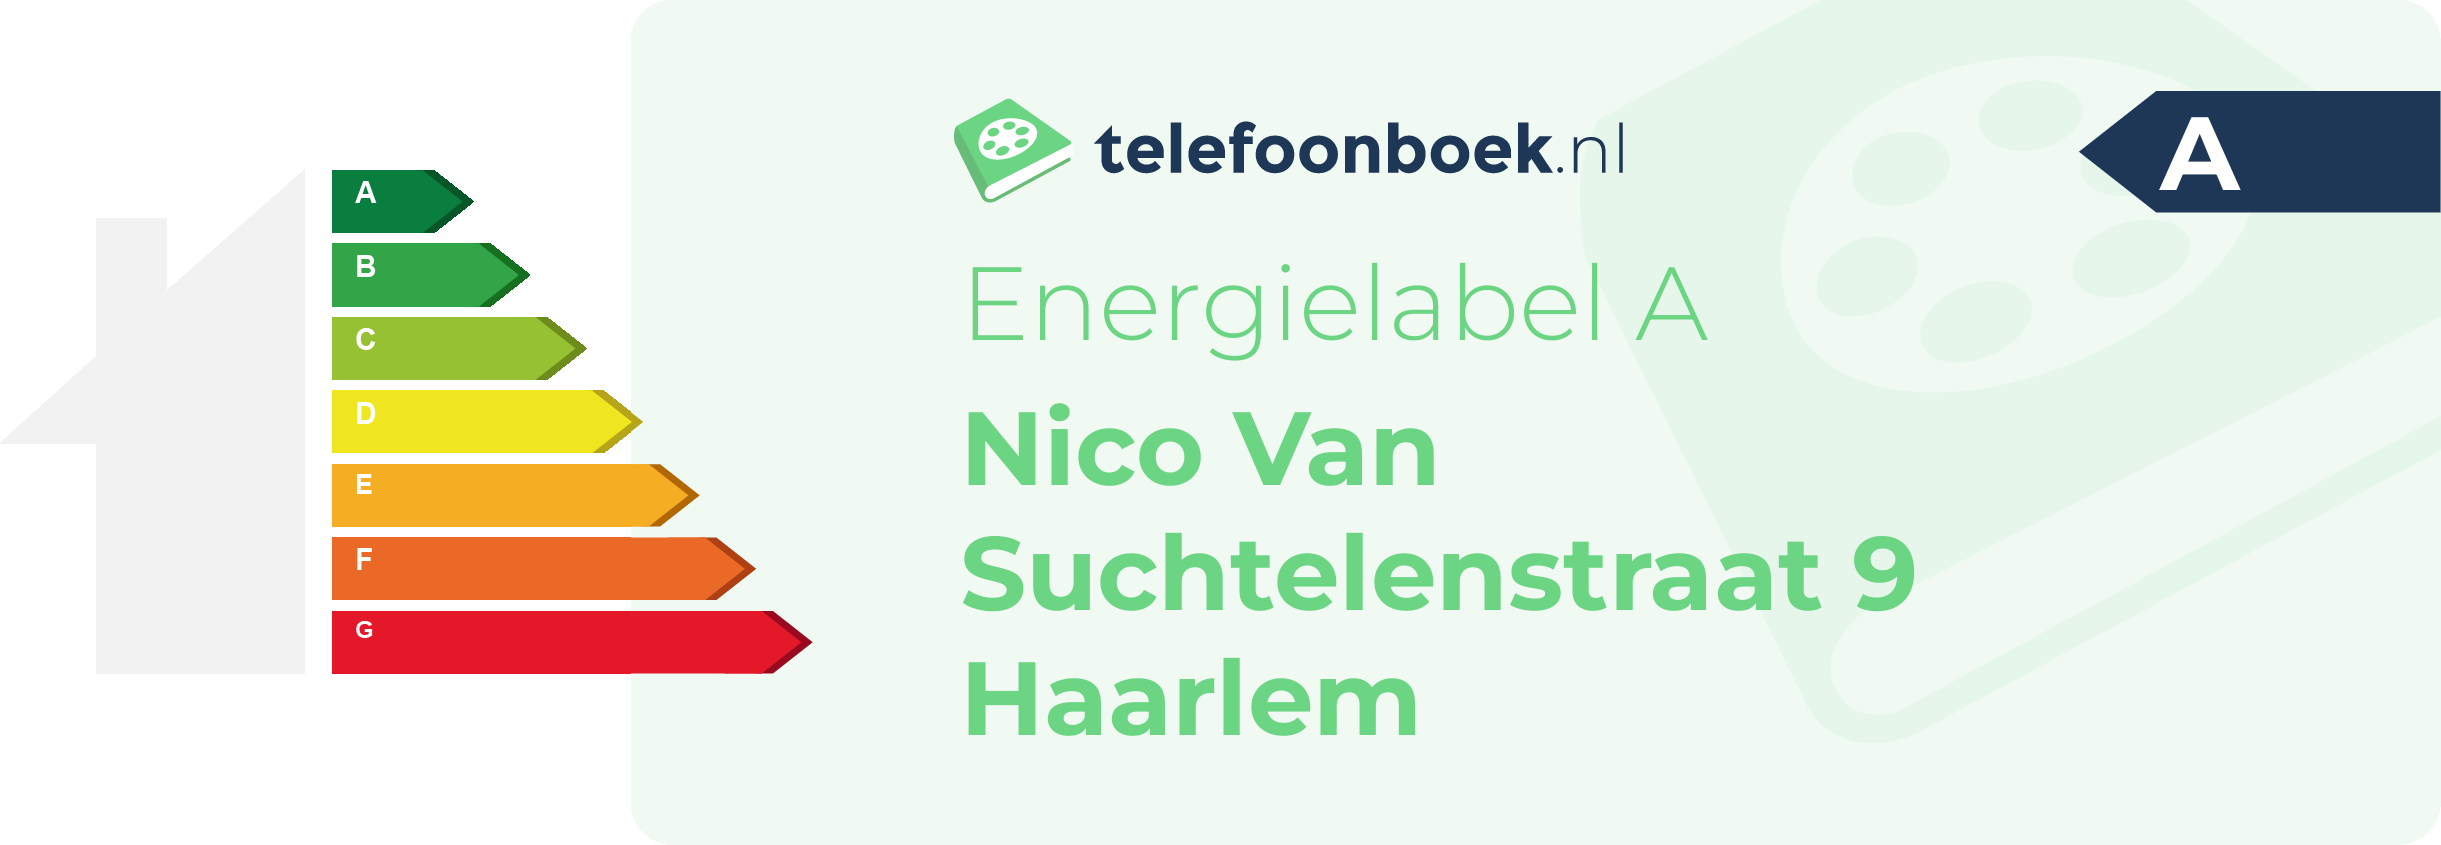 Energielabel Nico Van Suchtelenstraat 9 Haarlem